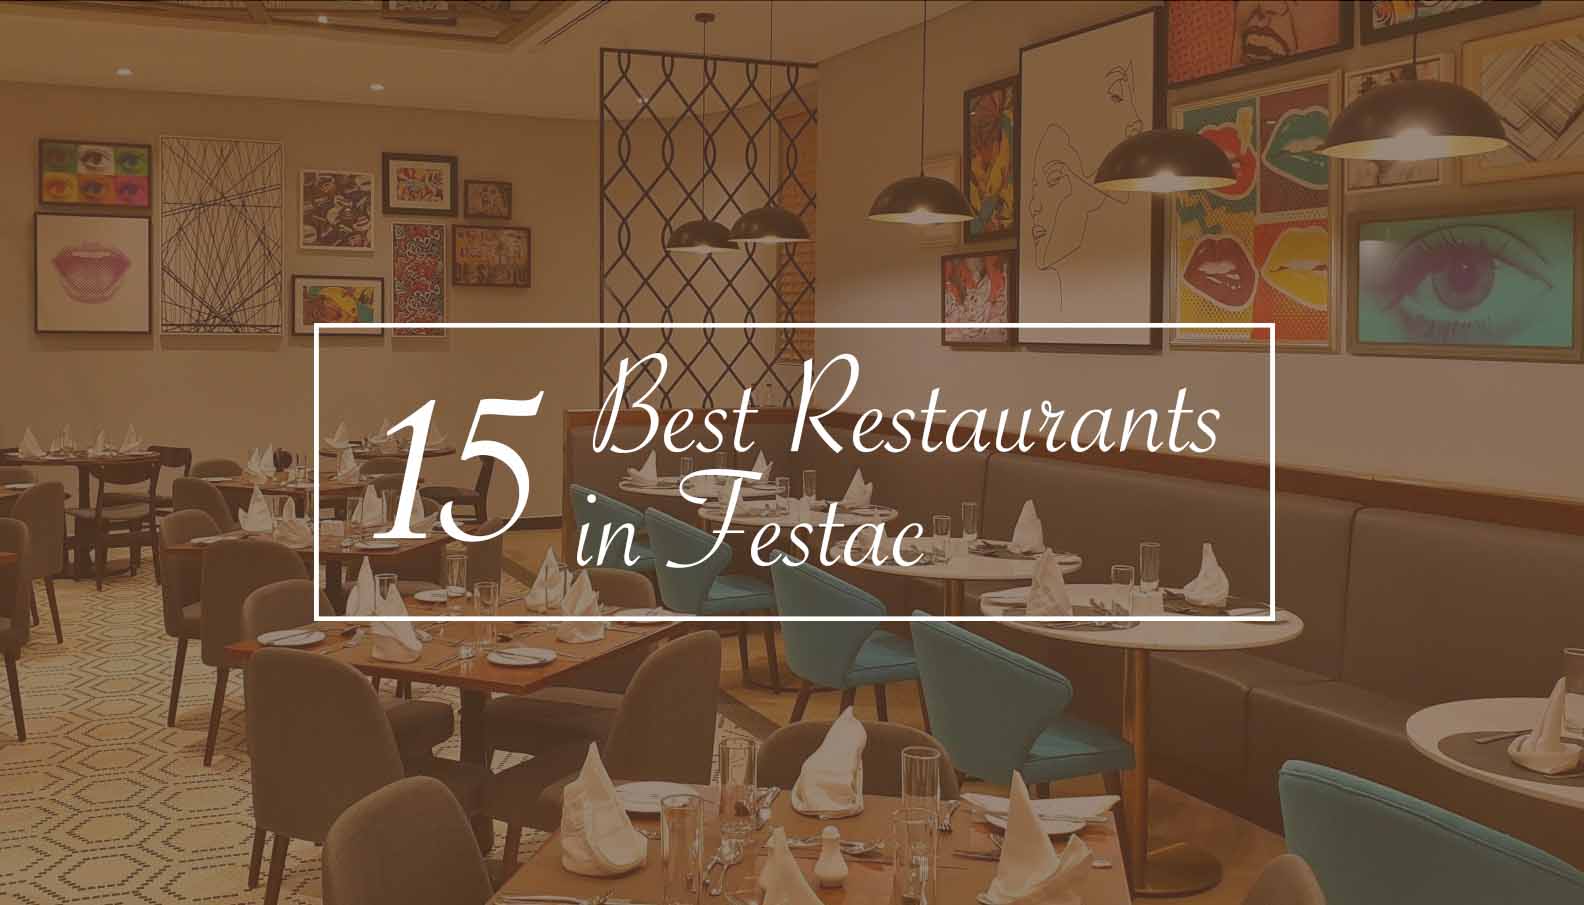 15 Best Restaurants in Festac